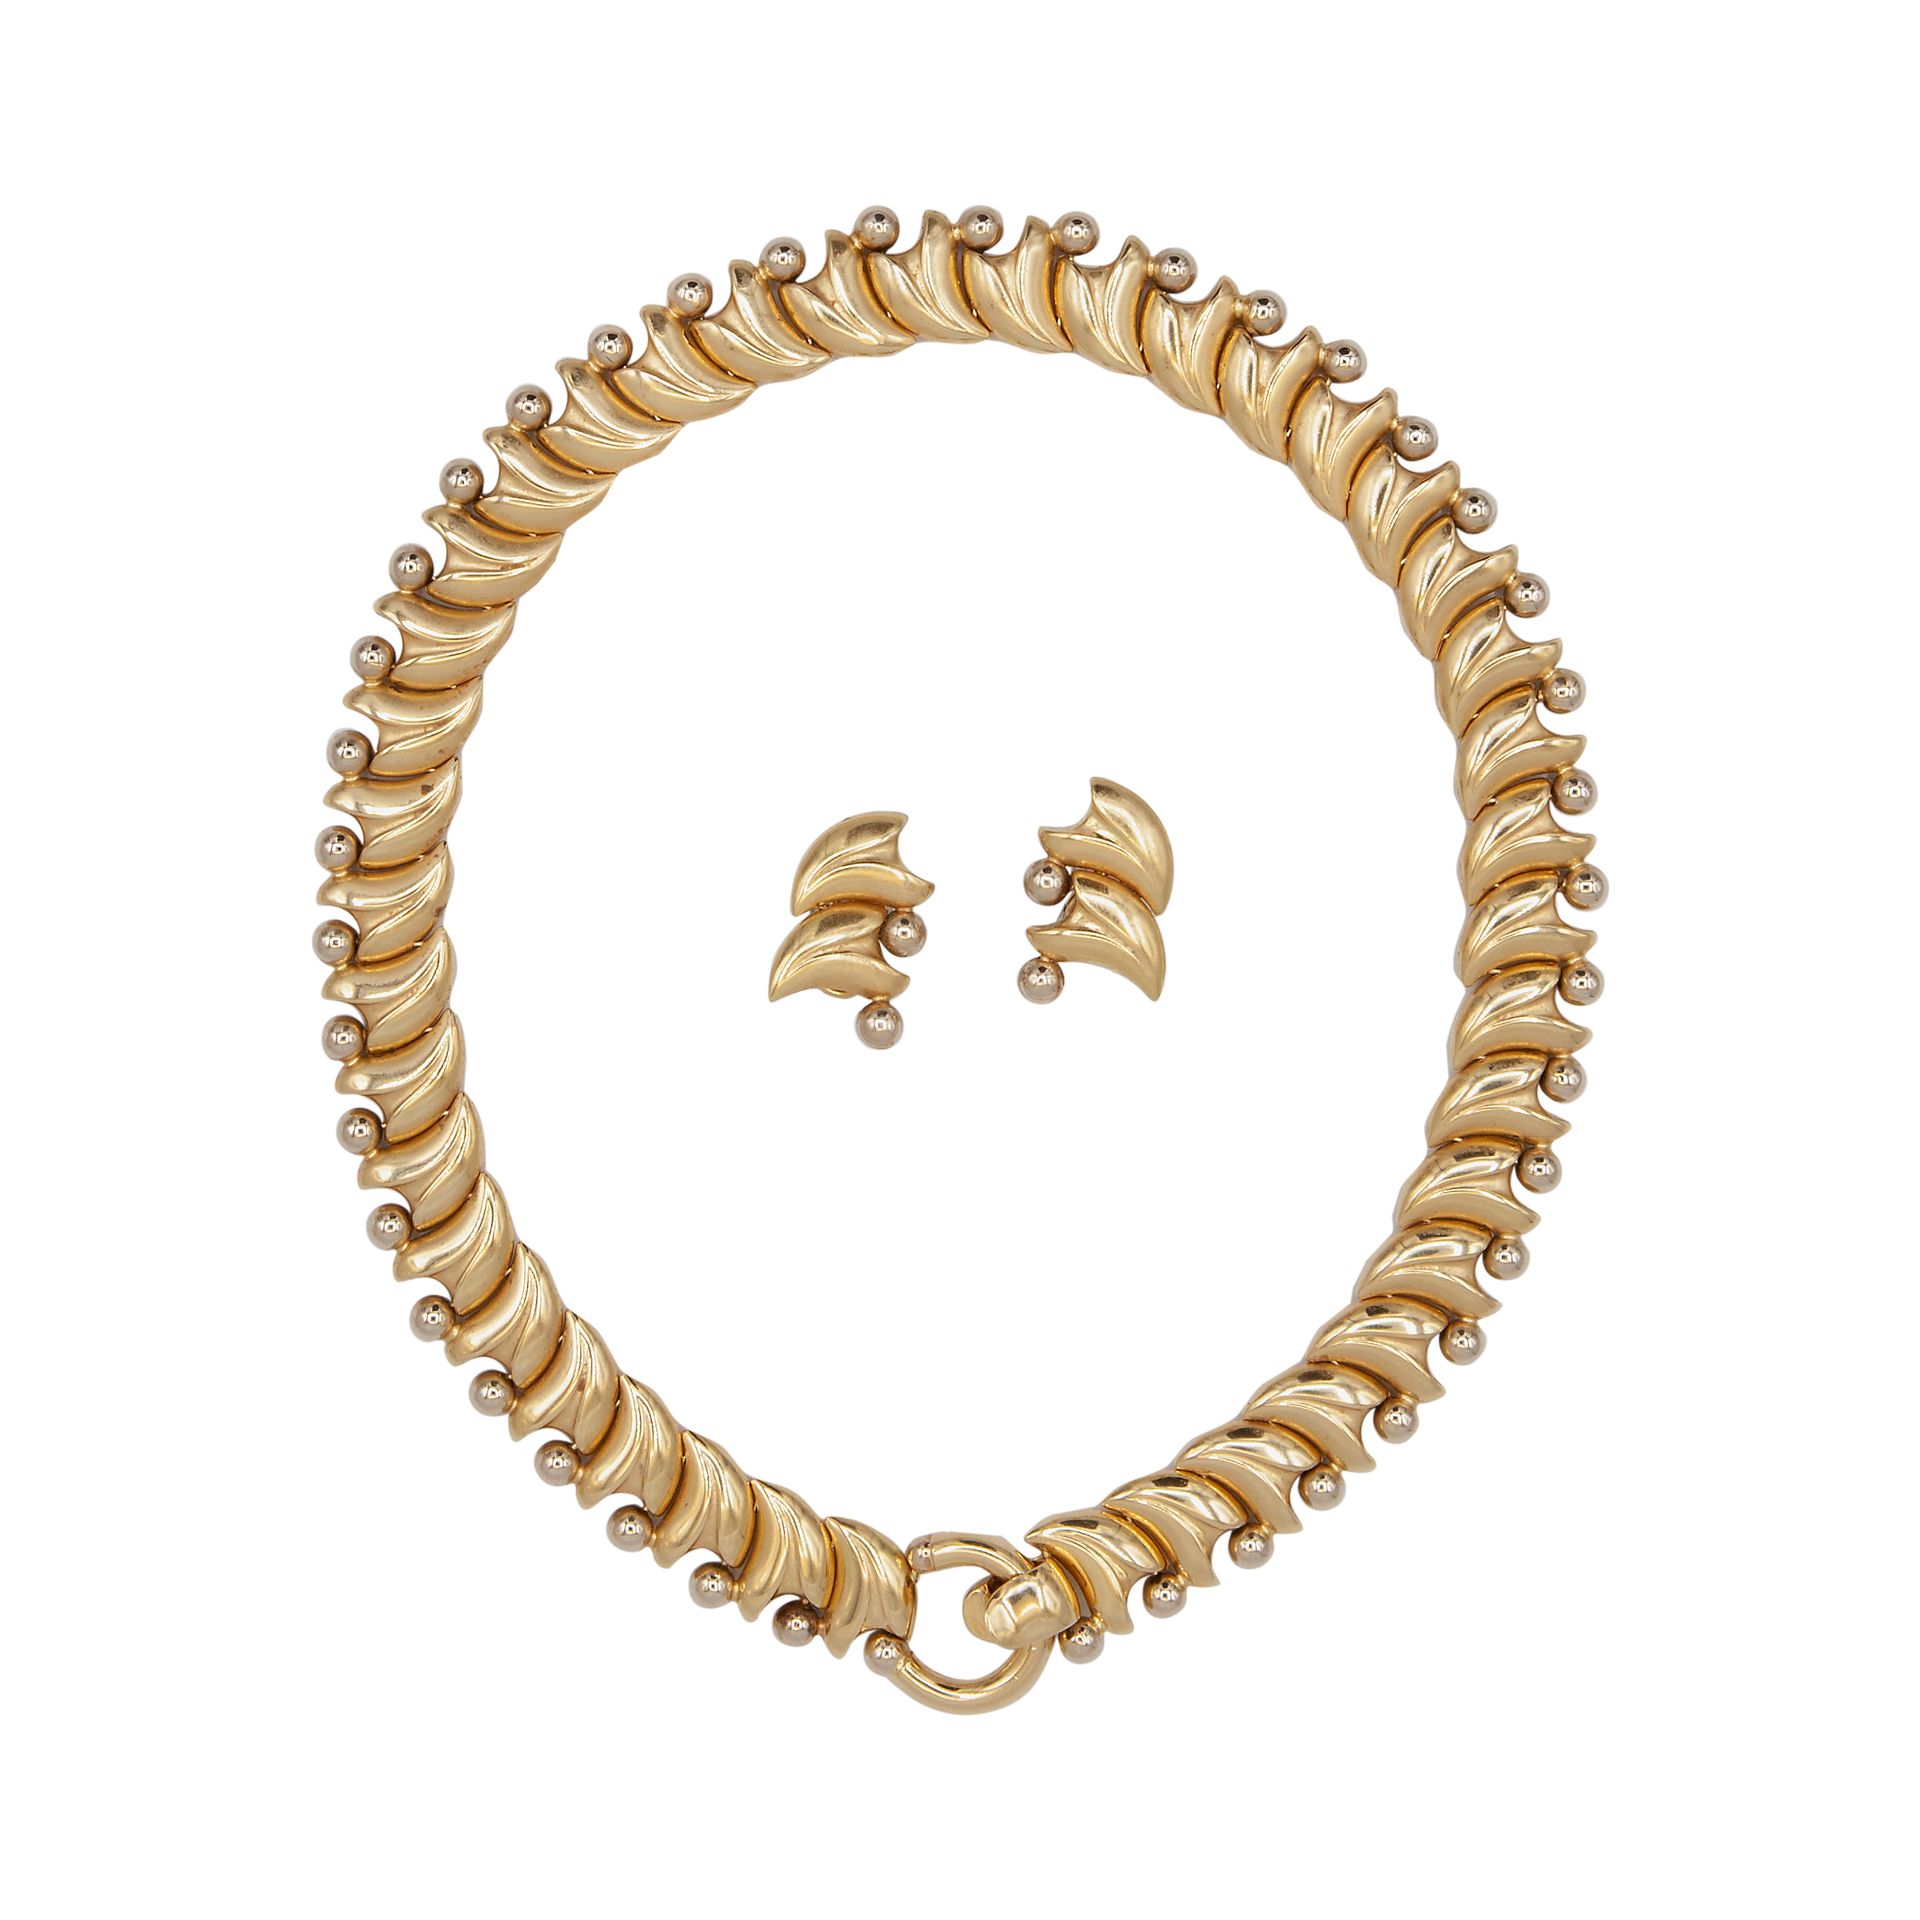 Null Parure bestehend aus Halskette und Ohrringe in 18kt Gelbgold. Halskette Län&hellip;